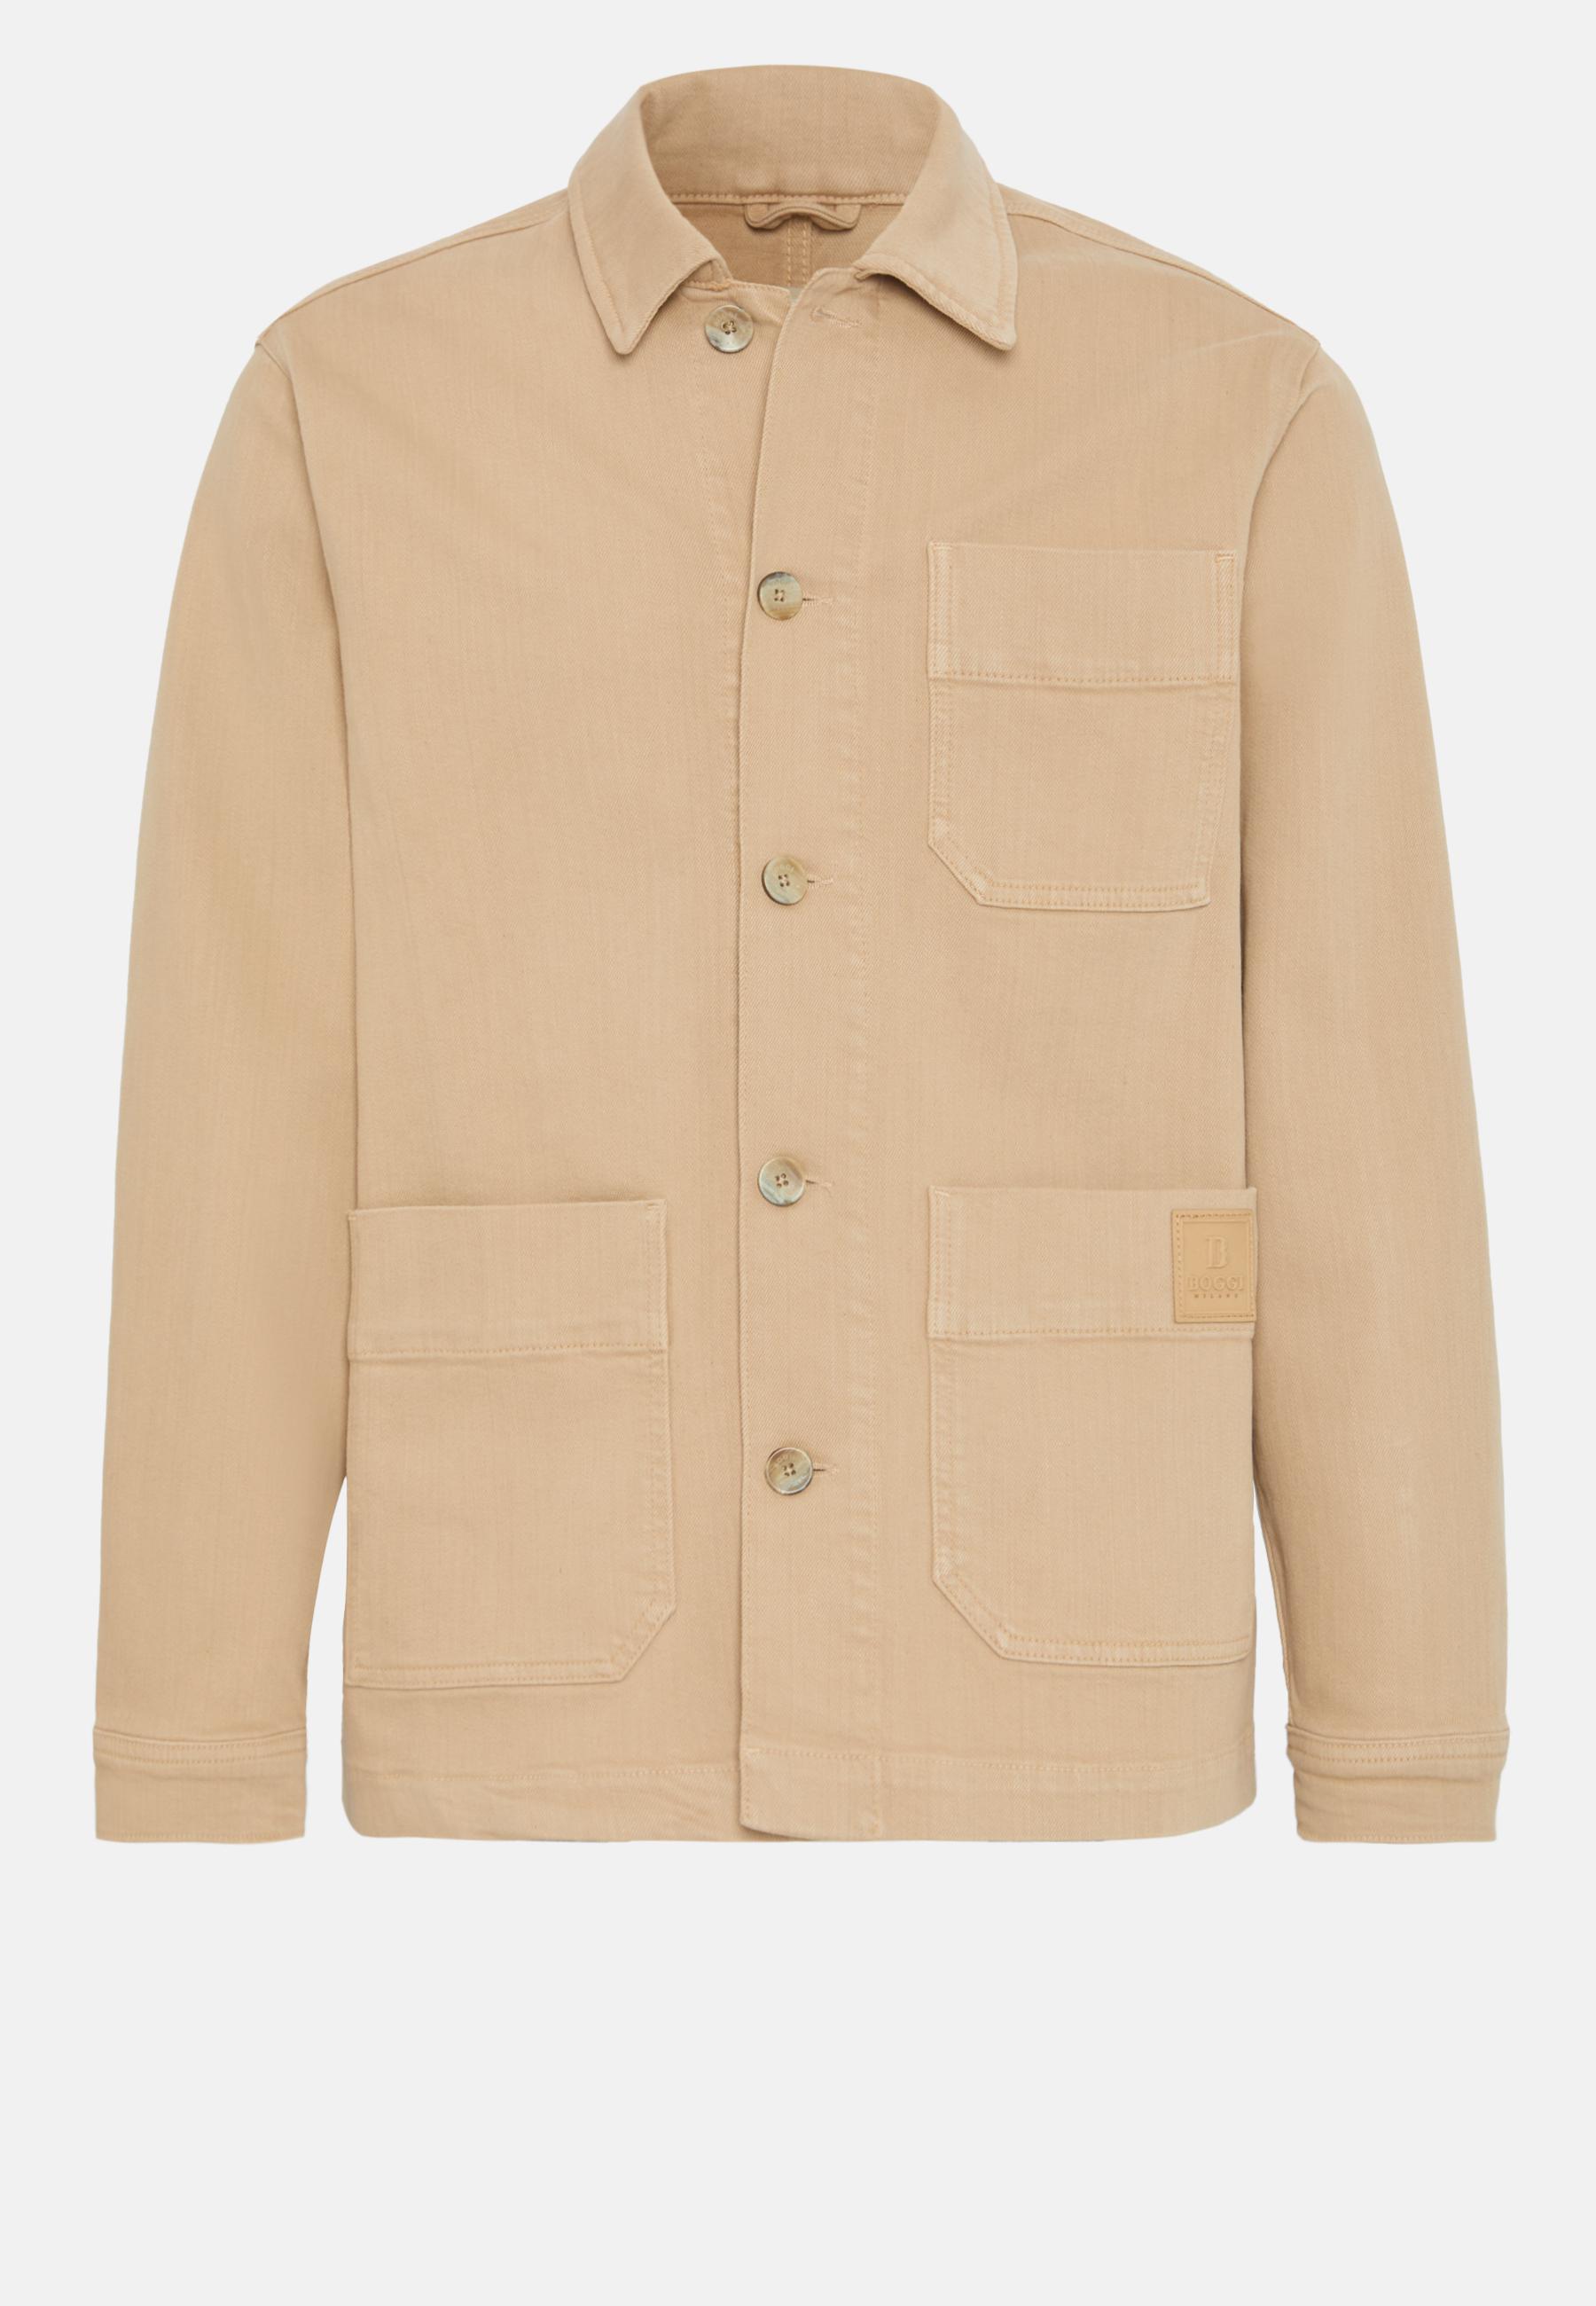 Куртка-рубашка из хлопка, Boggi Milano,&nbsp;26&nbsp;500 руб. (Boggi Milano)